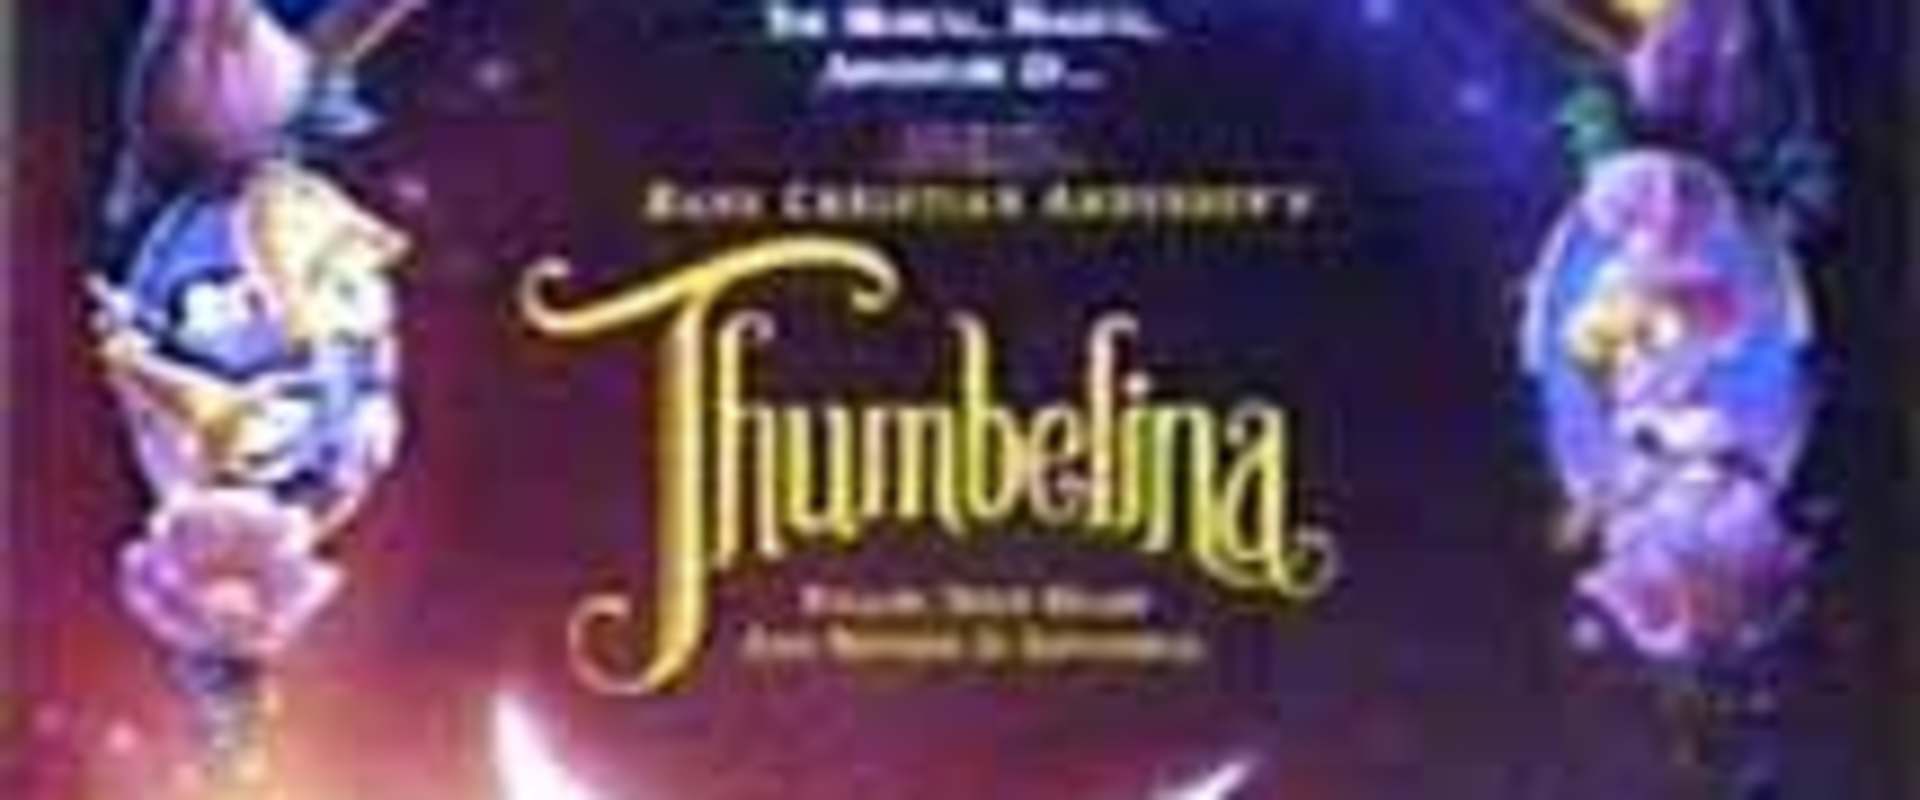 Thumbelina background 1